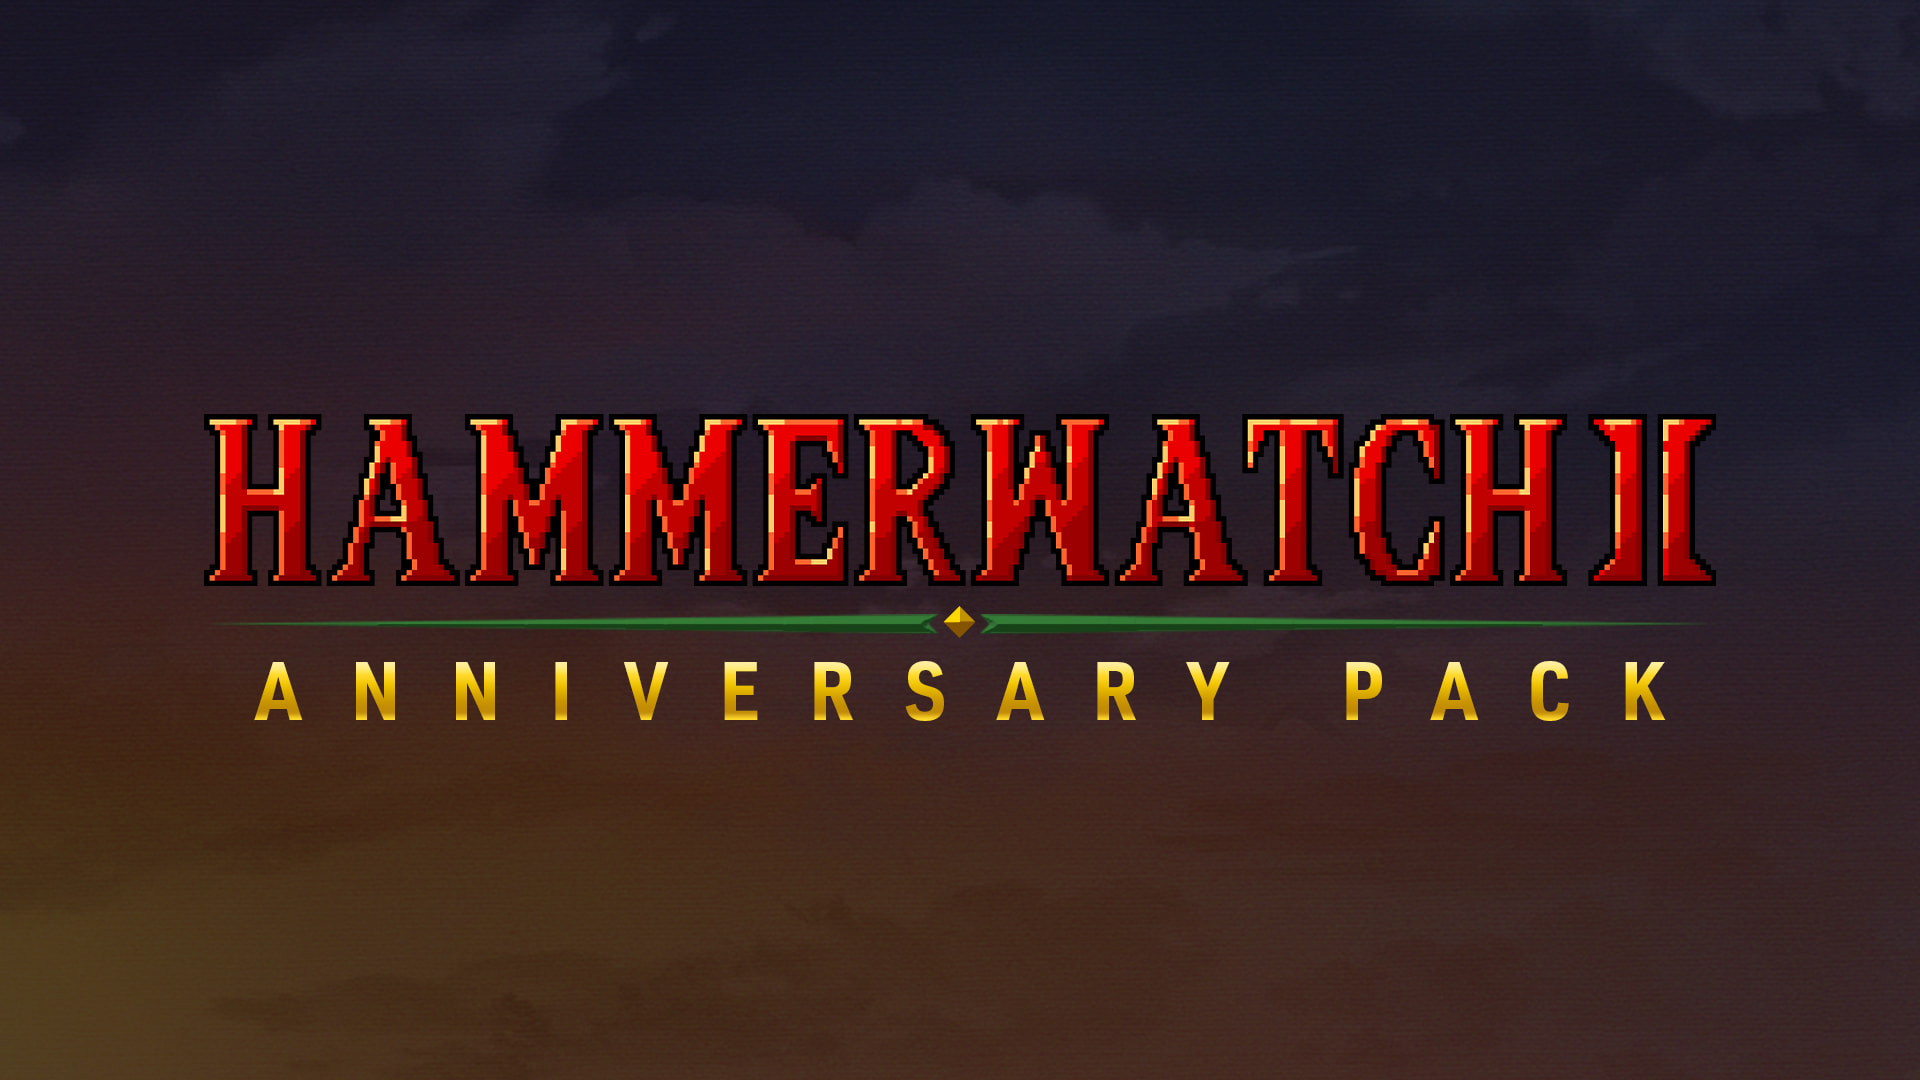 Hammerwatch II: Anniversary Pack 1